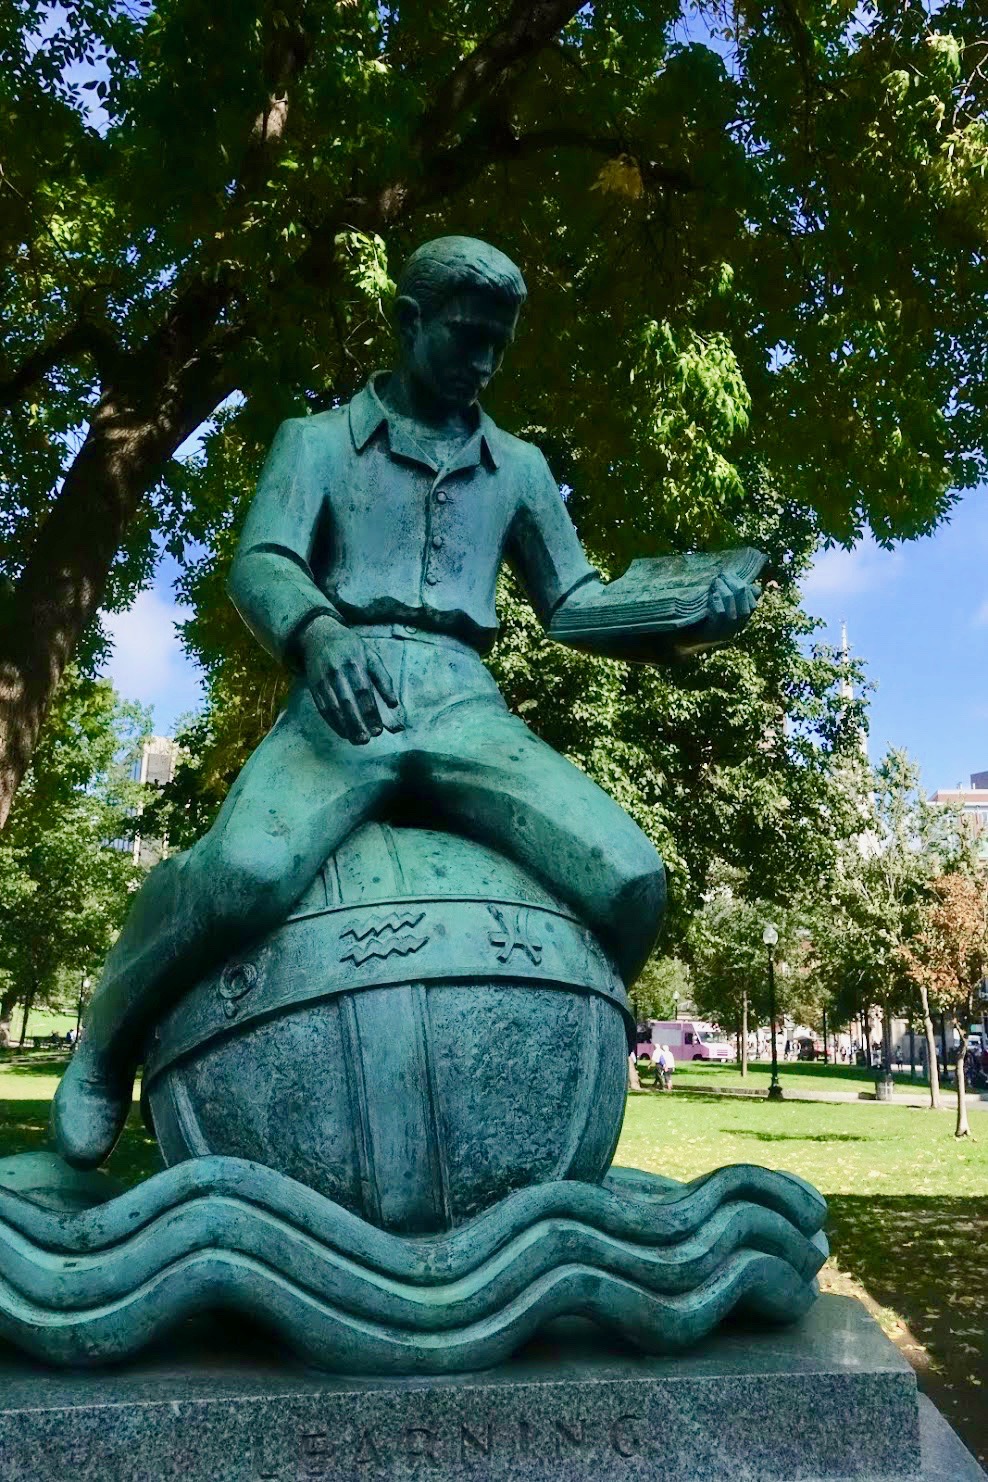 Standbeeld van jongen die leest terwijl hij op een wereldbol zit, eronder de tekst 'learning'